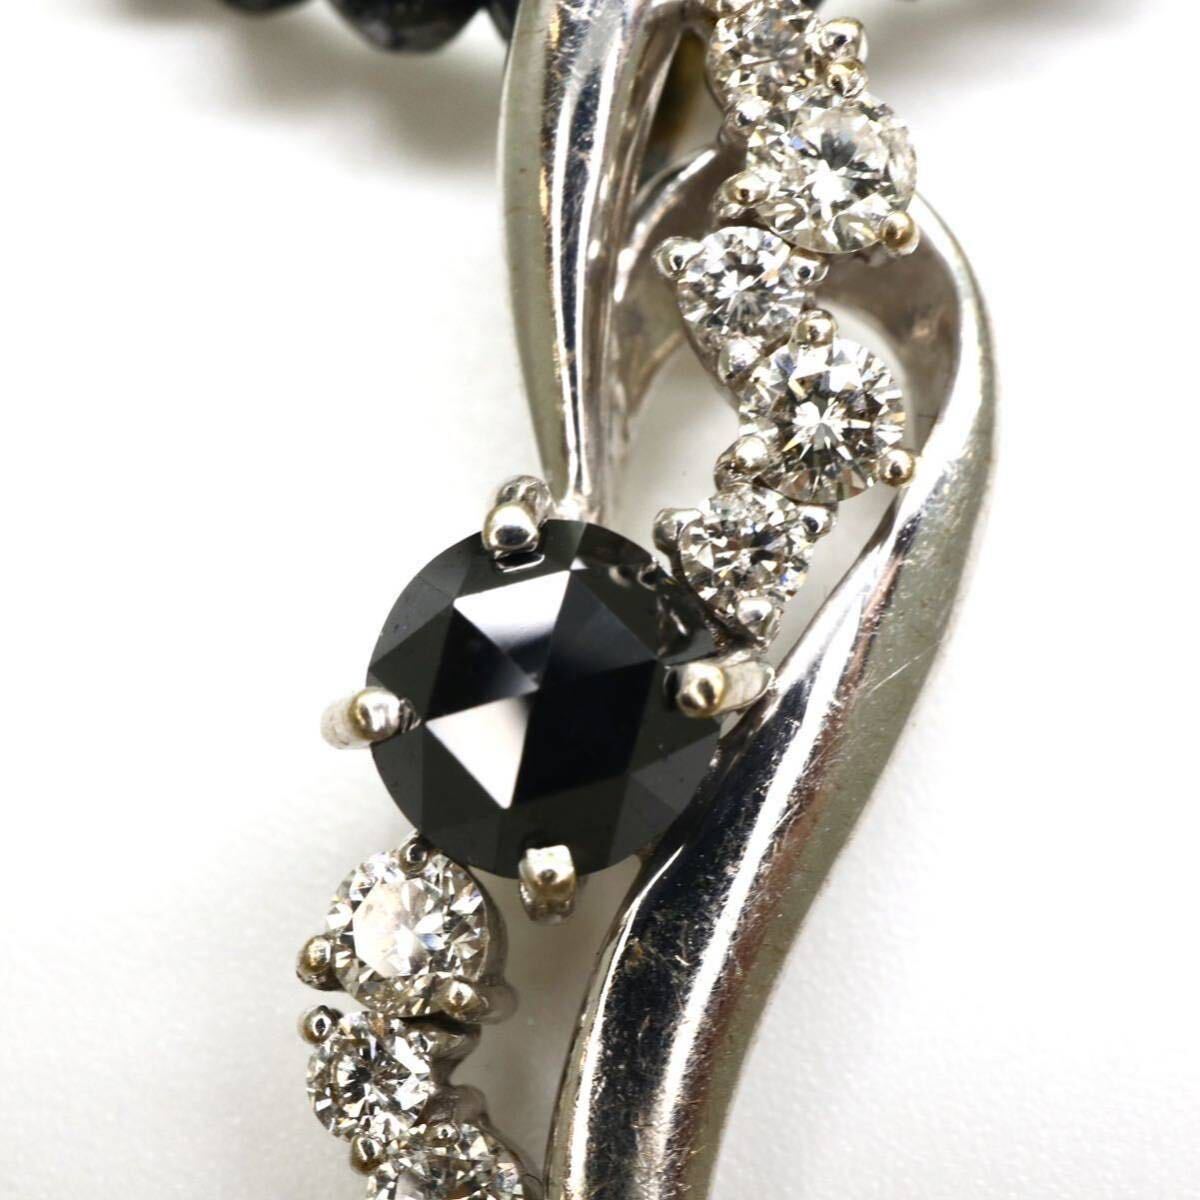 ◆K18WG 天然ブラックダイヤモンド/天然ダイヤモンドネックレス◆M◎ 7.0g 40.0cm 0.52ct 0.27ct 20.09 diamond jewelry necklace EC6/EC6_画像4